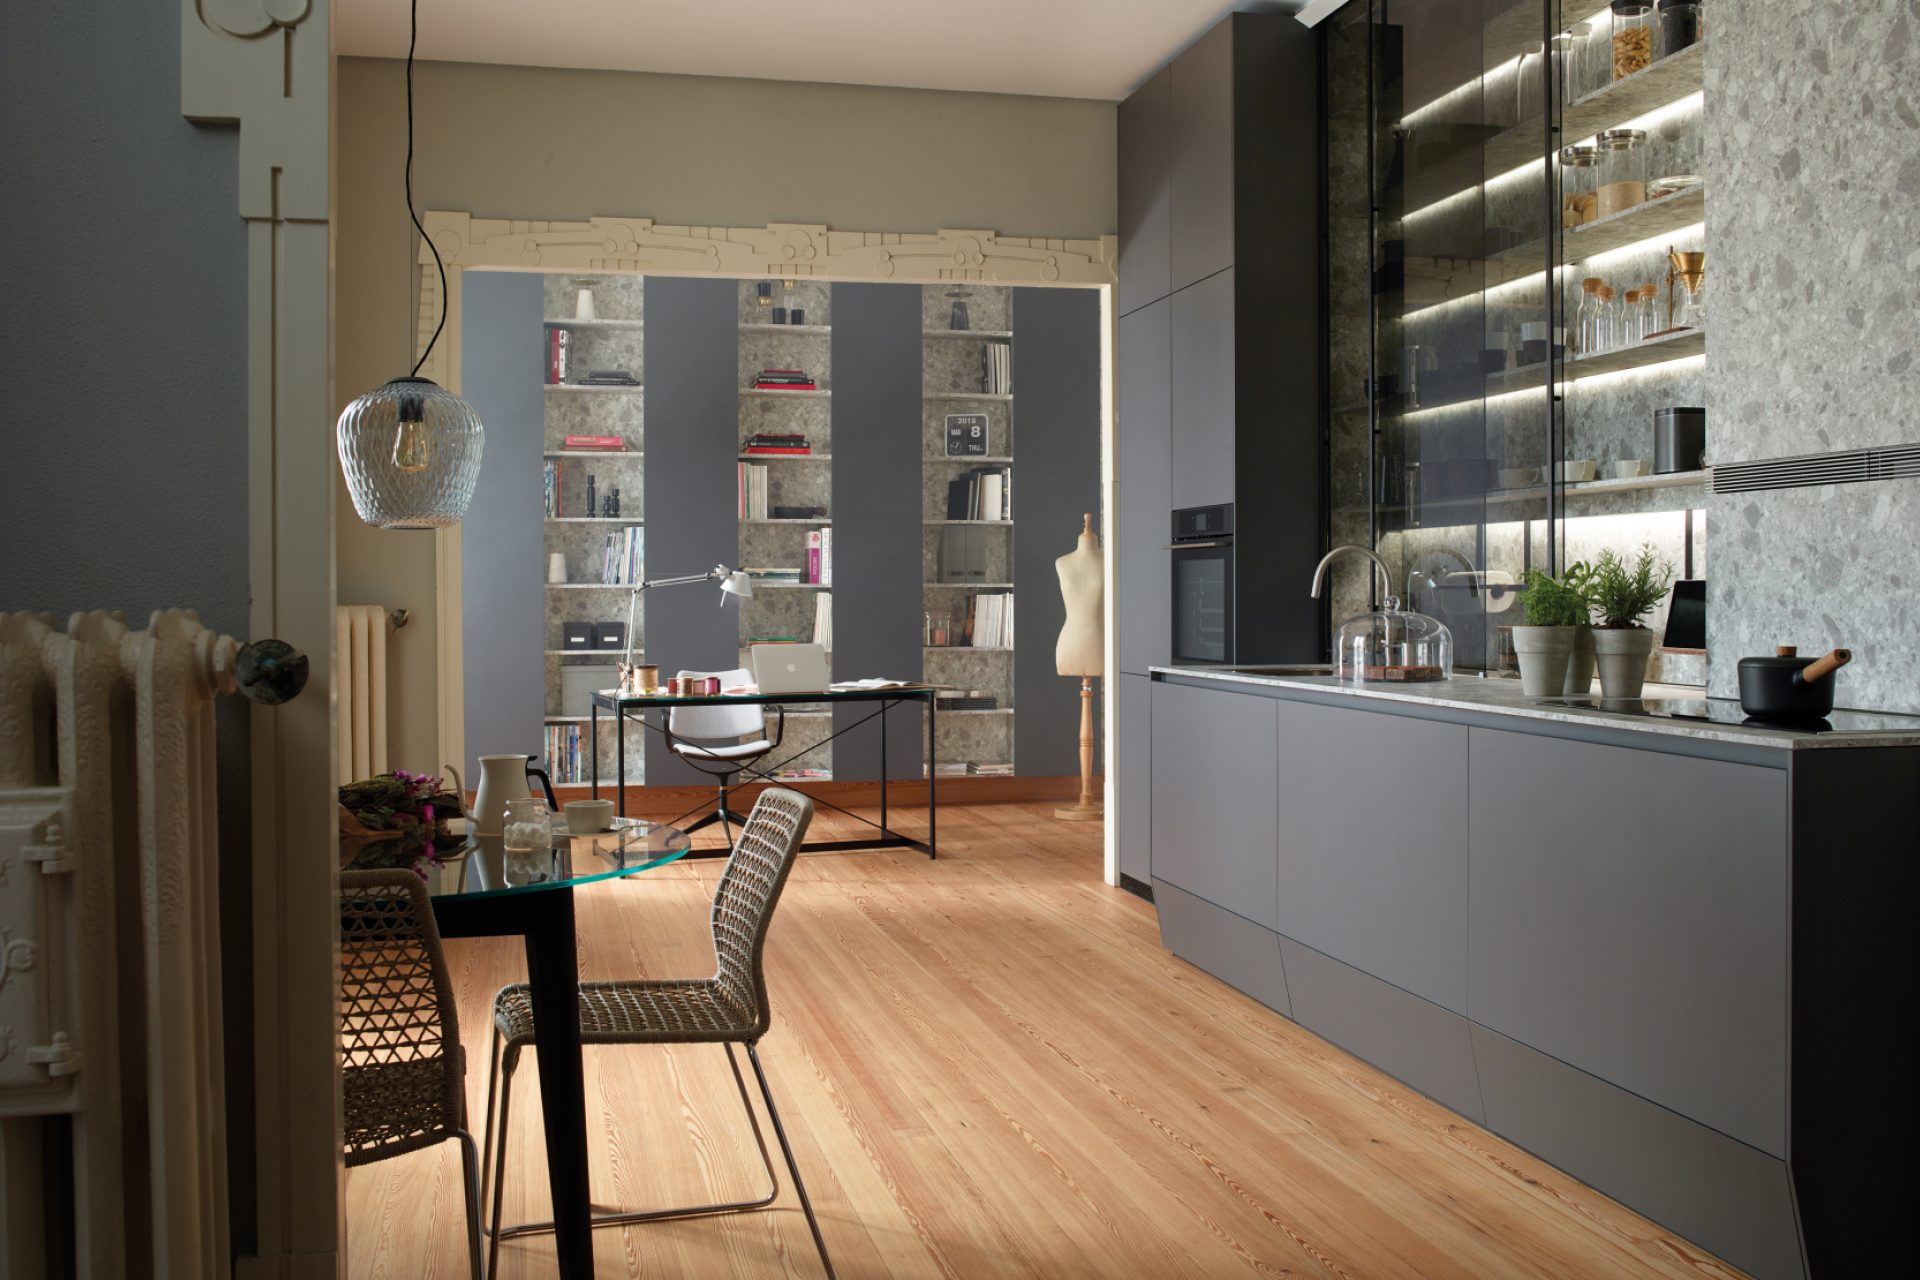 Cuisine linéaire grise avec meubles colonne, étagères et meubles bas avec coffre plinthe, ouverte sur l'espace de jour